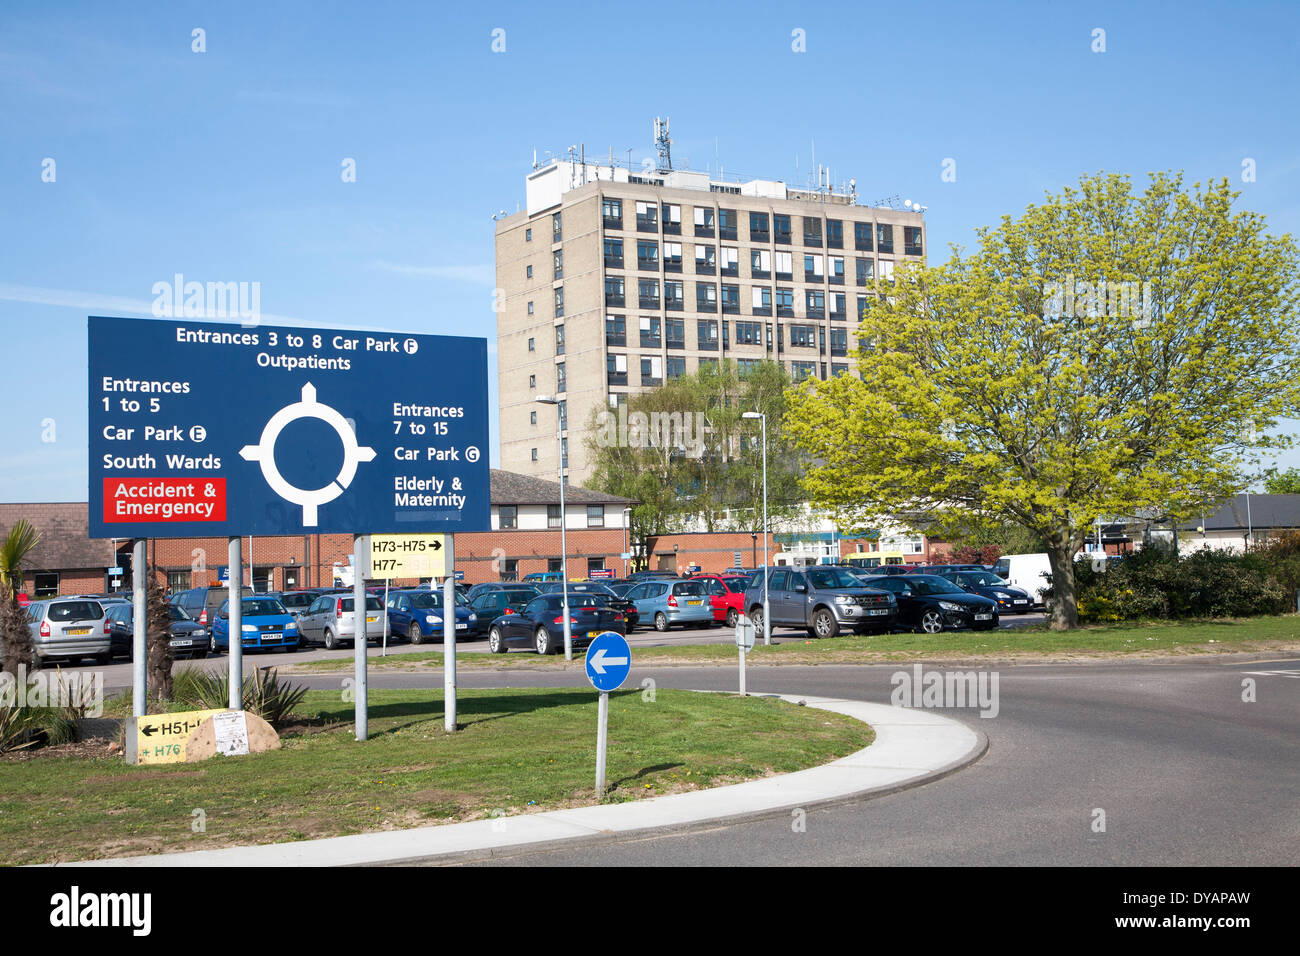 Parking sign et l'unité de maternité de l'Hôpital d'Ipswich, NHS Trust, Ipswich, Suffolk, Angleterre Banque D'Images